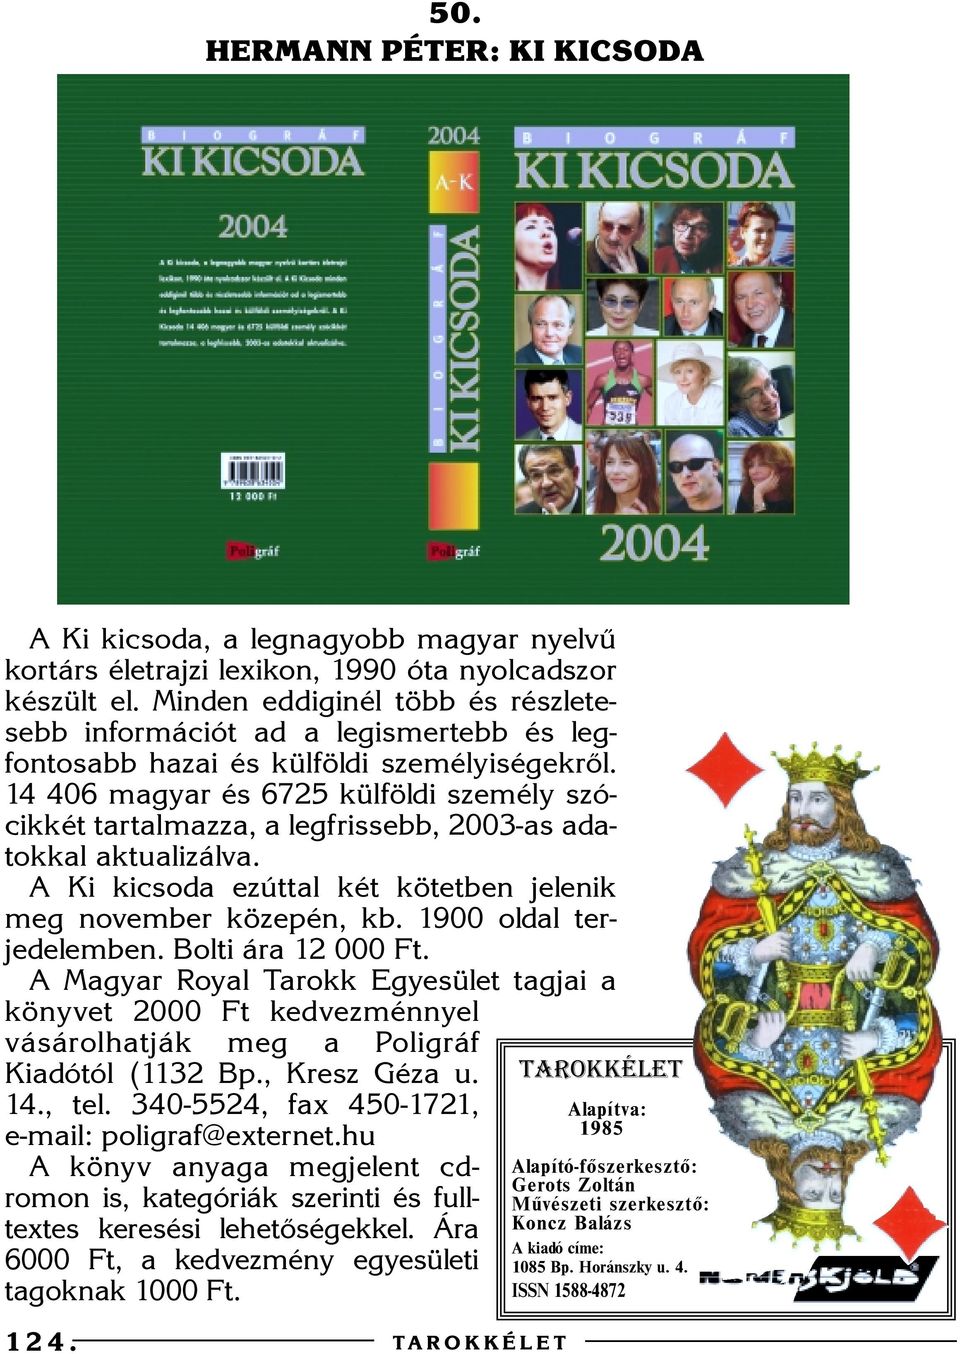 14 40 magyar és 75 külföldi személy szócikkét tartalmazza, a legfrissebb, 00-as adatokkal aktualizálva. A Ki kicsoda ezúttal két kötetben jelenik meg november közepén, kb. 1900 oldal terjedelemben.